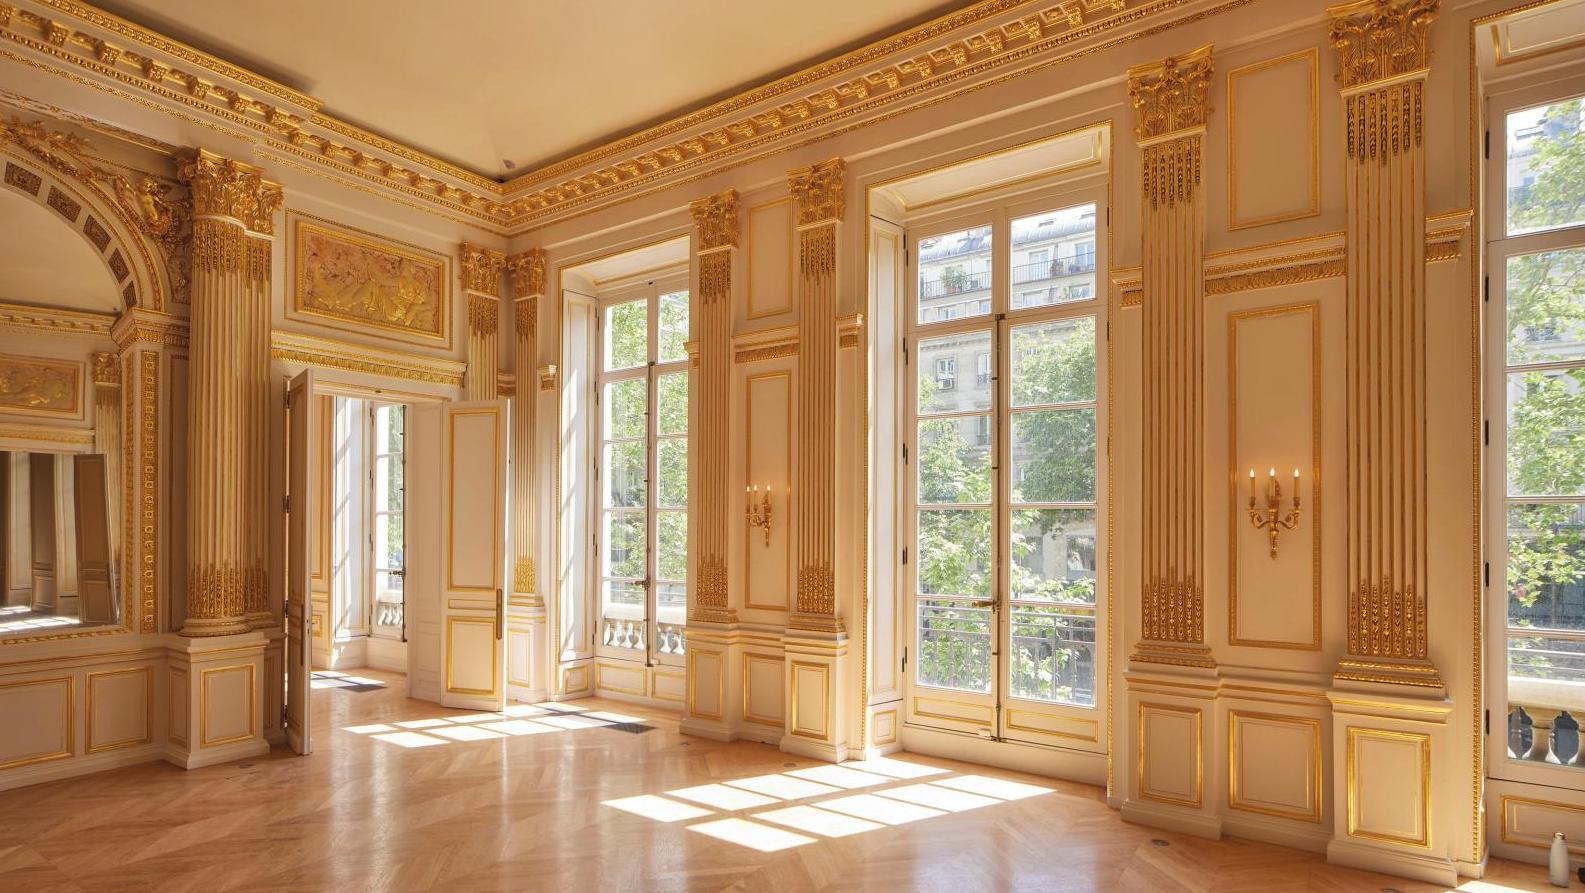 Le grand salon d’époque Louis XVI. © Benjamin Chelly  L’hôtel de Mercy-Argenteau, un écrin pour l’École des arts joailliers